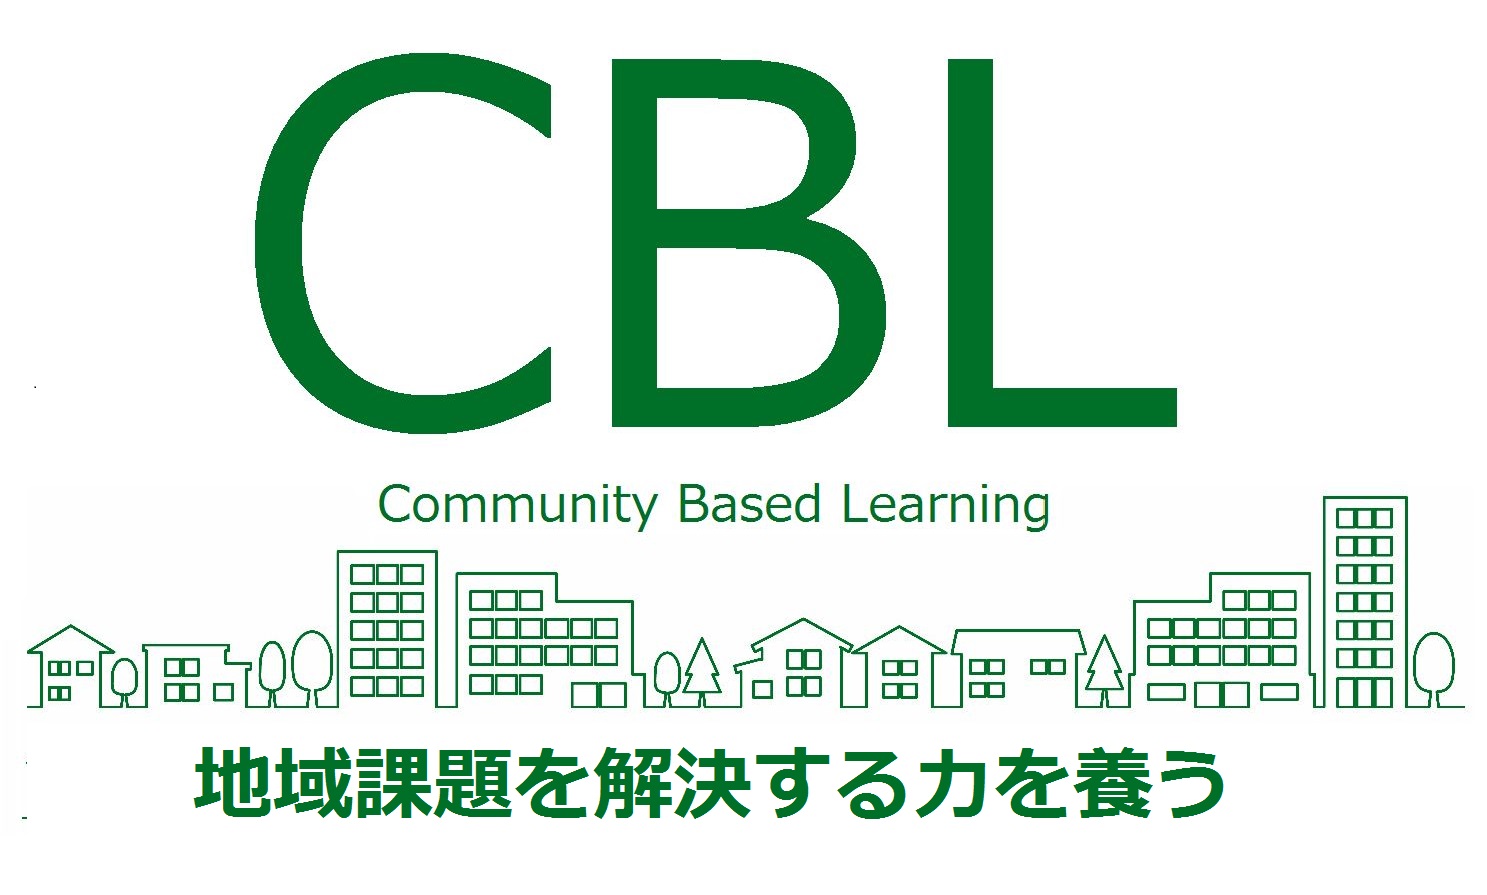 Community Based Learning